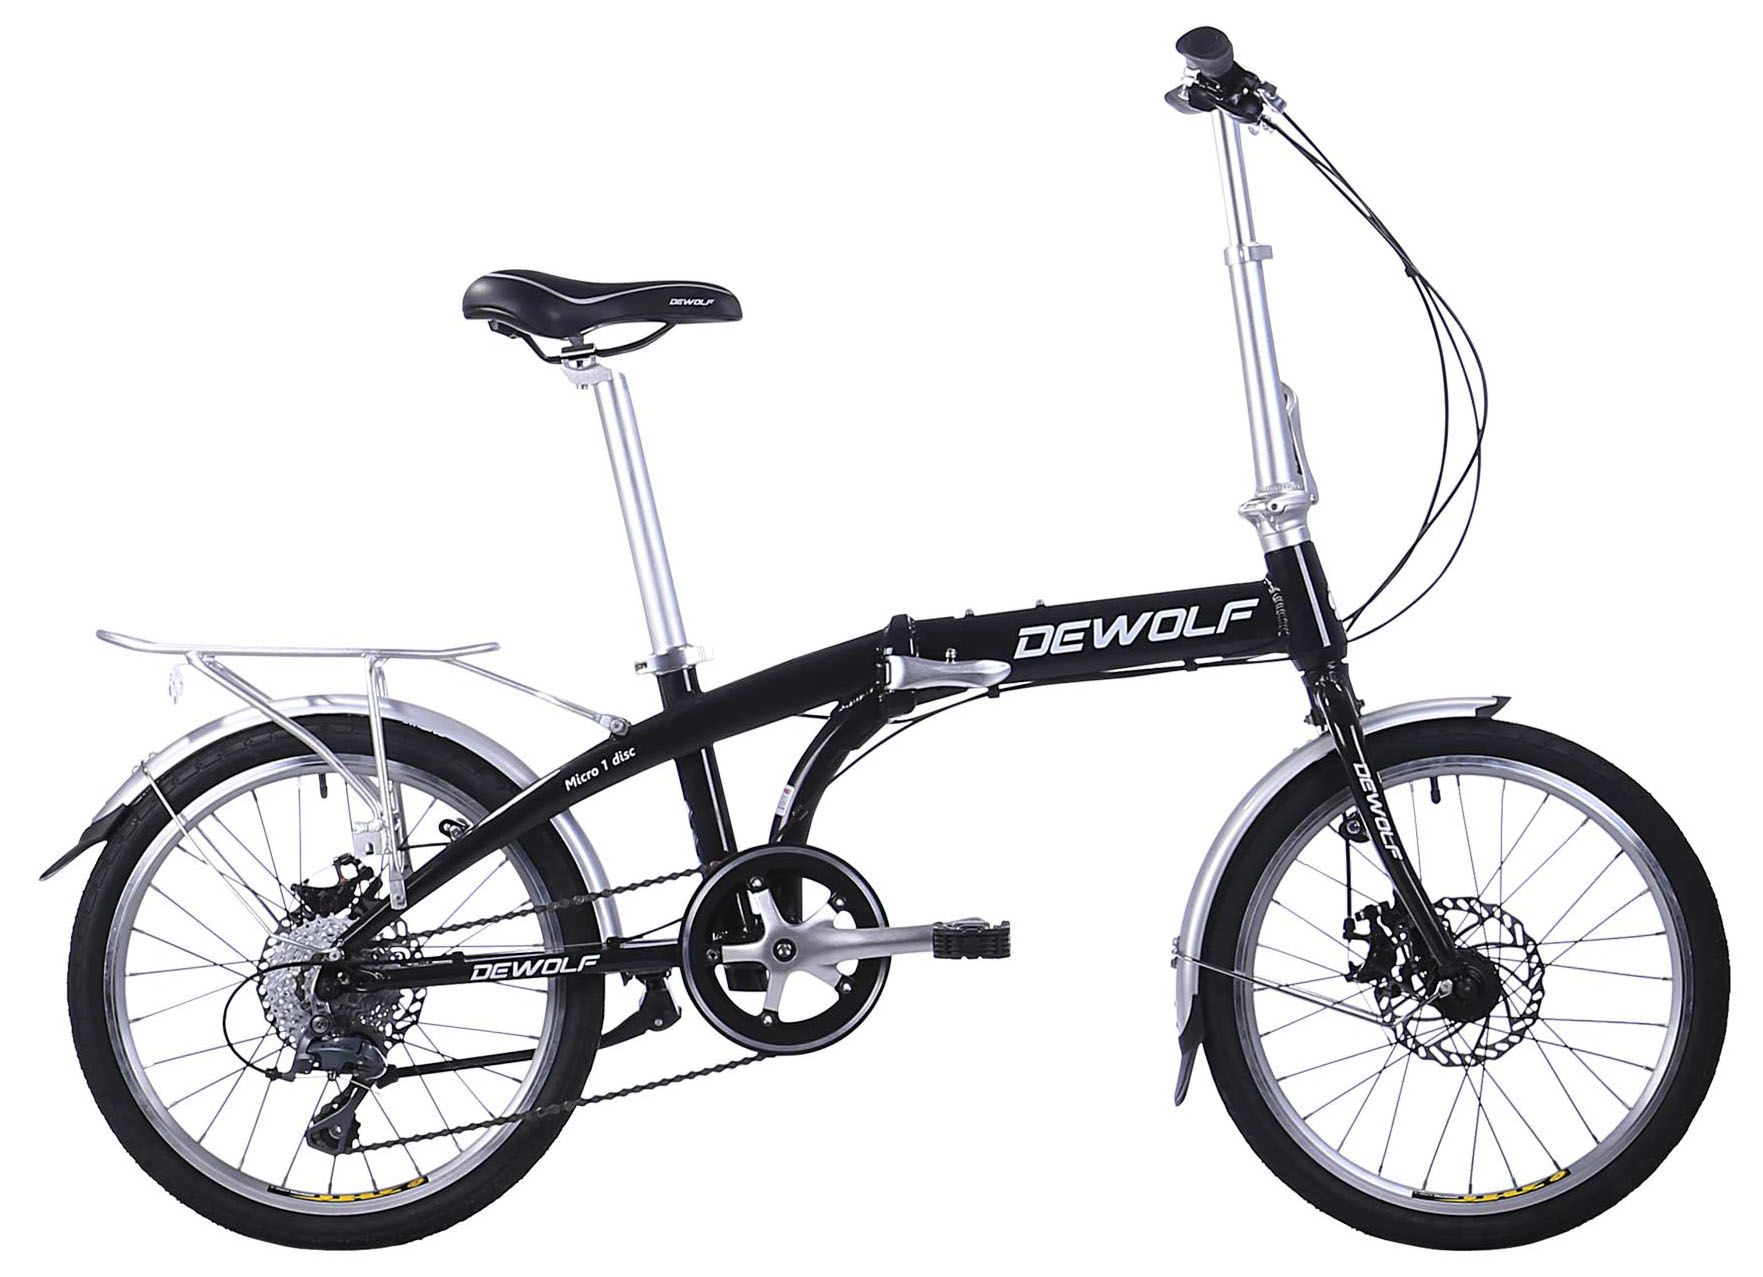  Велосипед Dewolf Micro 1 2018